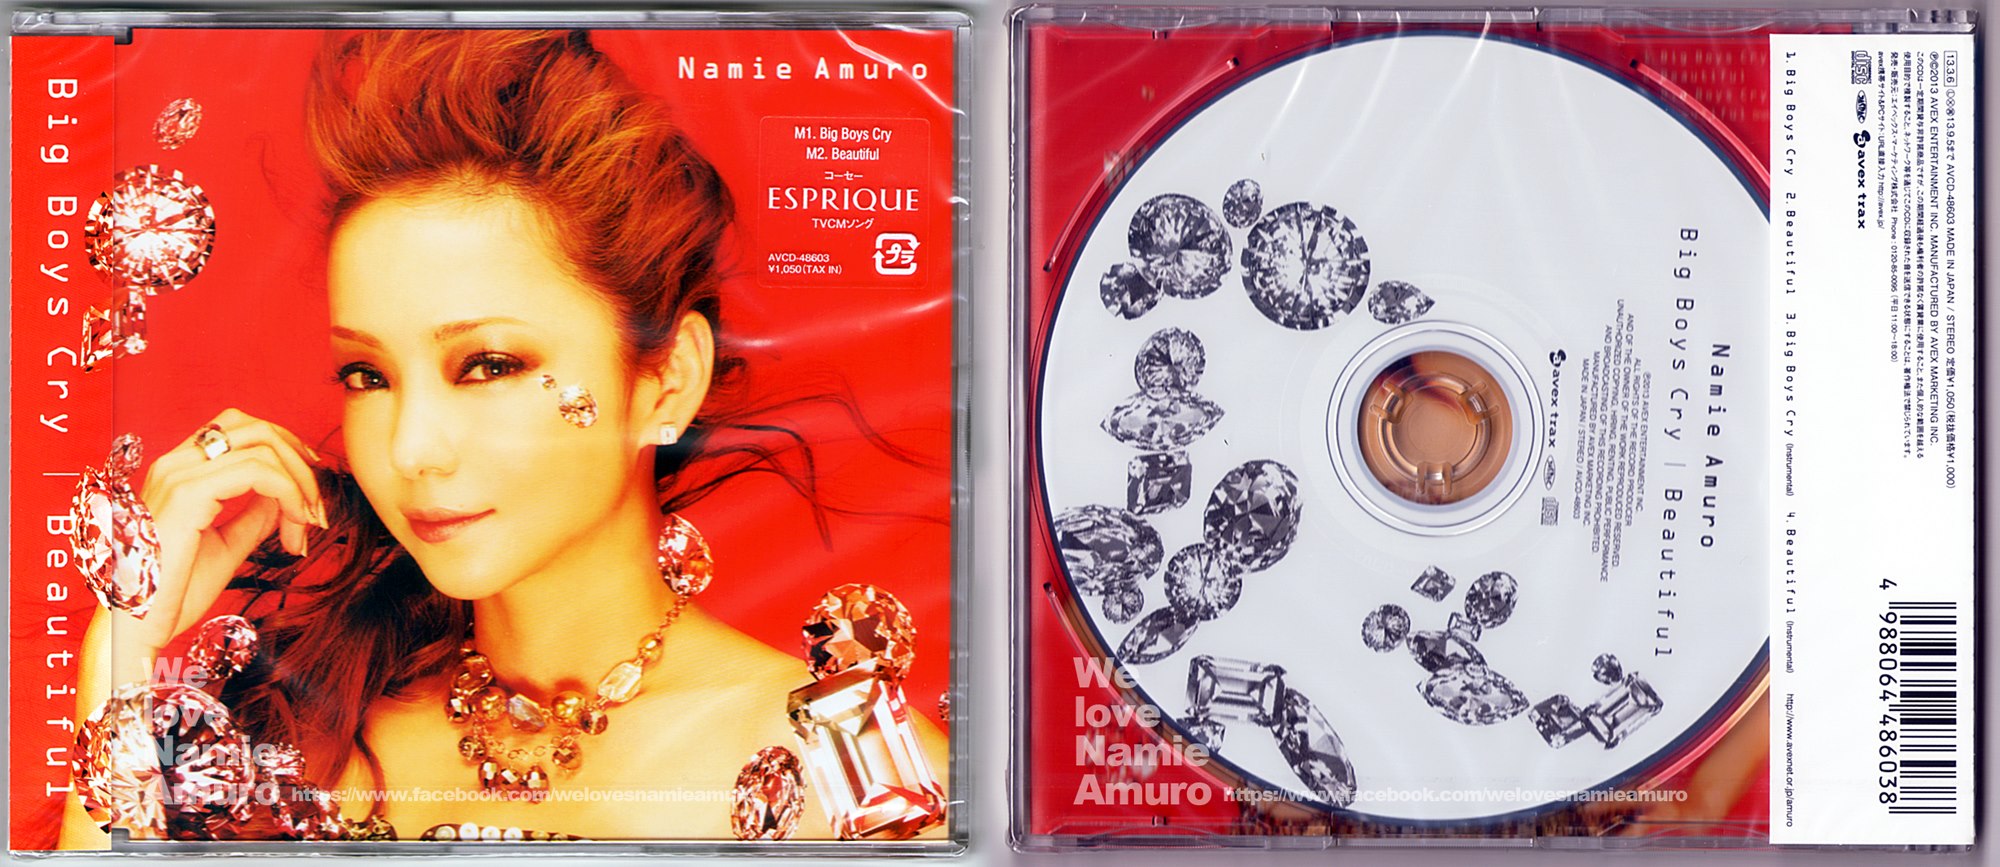 Namie Amuro >> Album "Feel" 3213